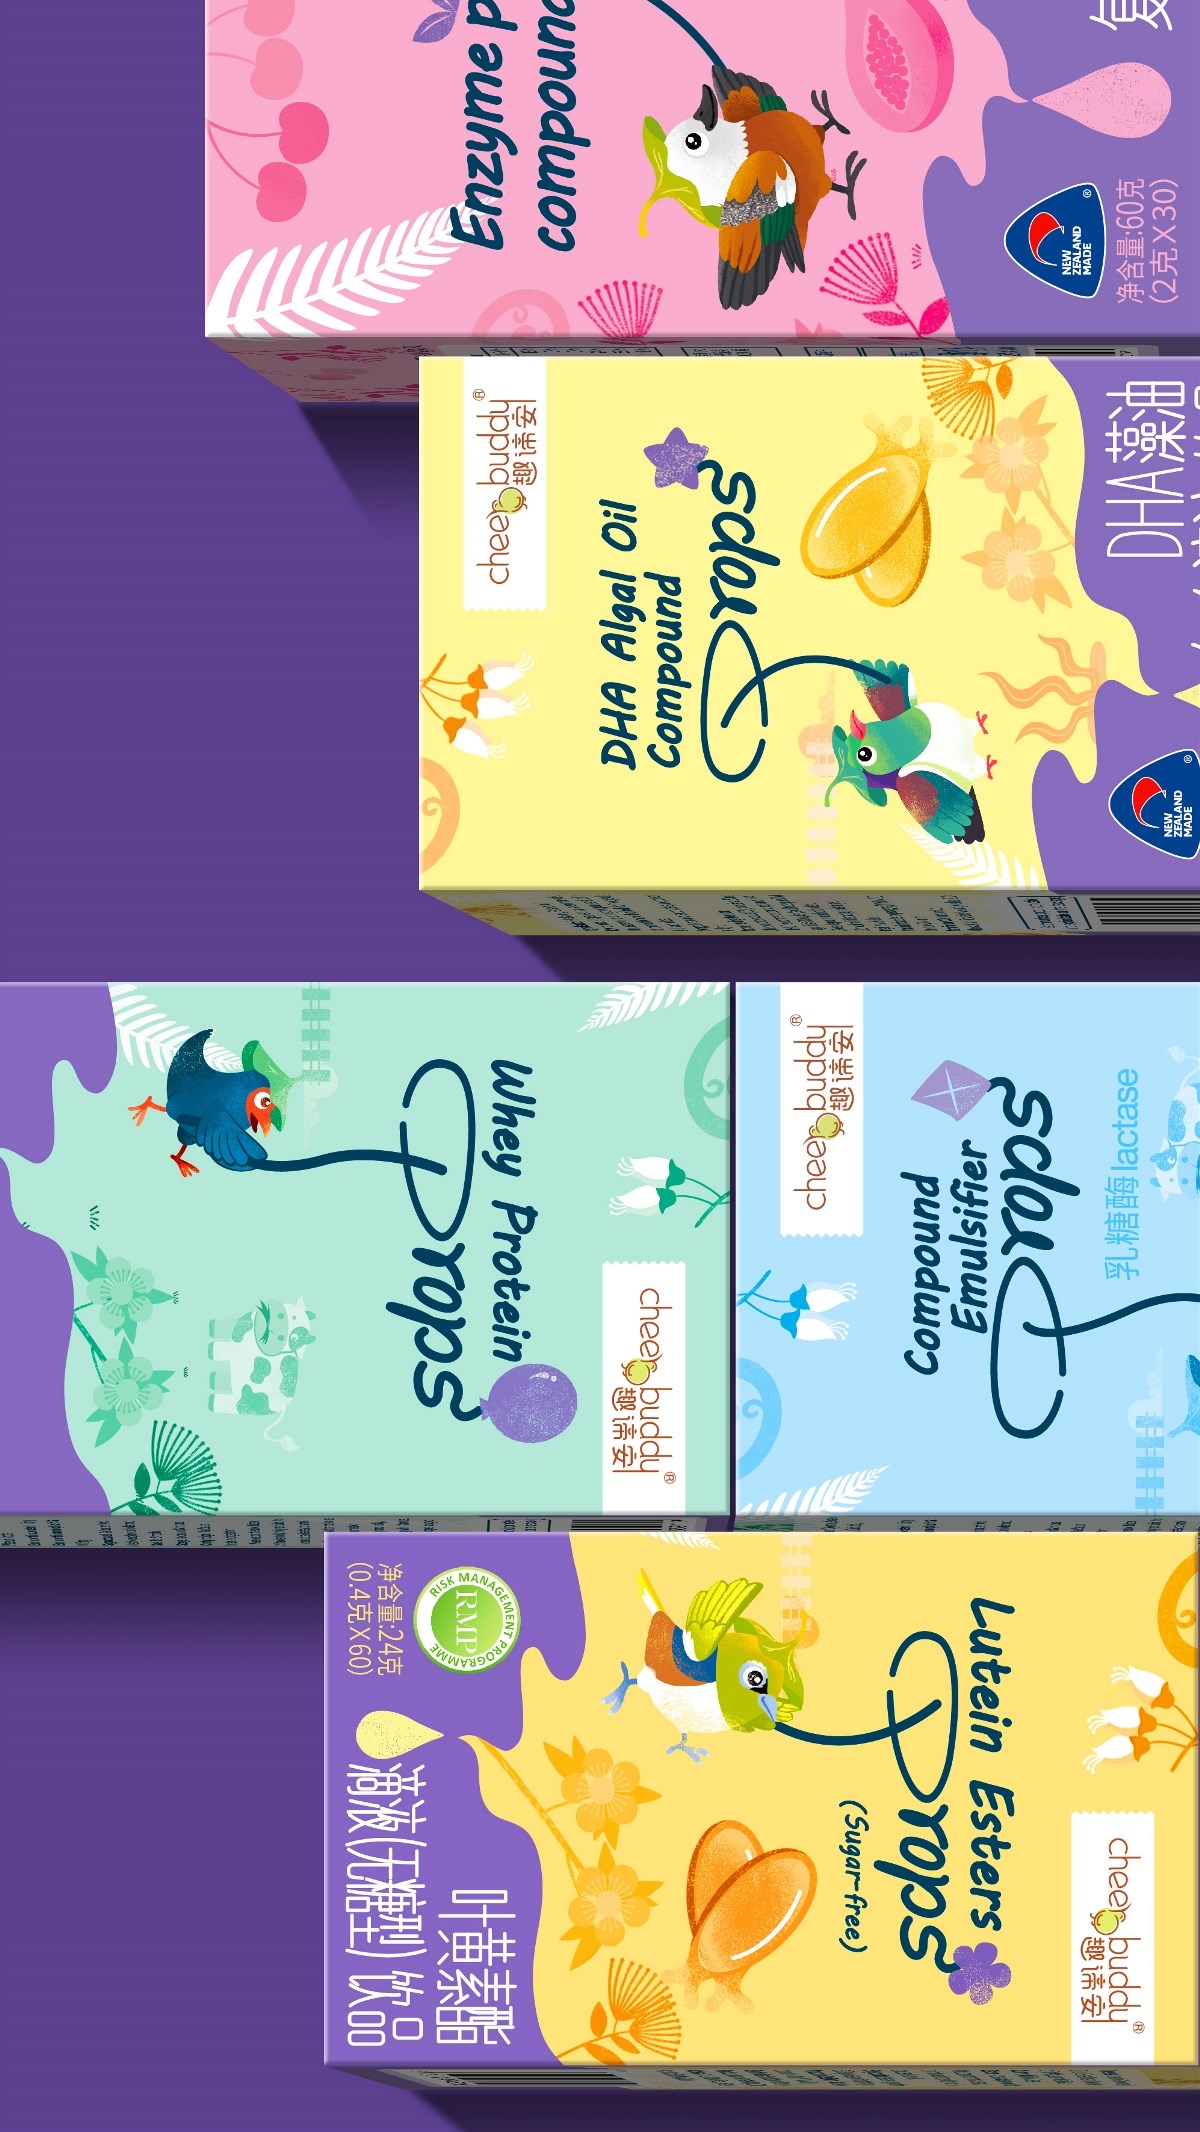 儿童营养品包装设计 营养补充剂 滴剂 食品包装  卡通风 新西兰鸟类